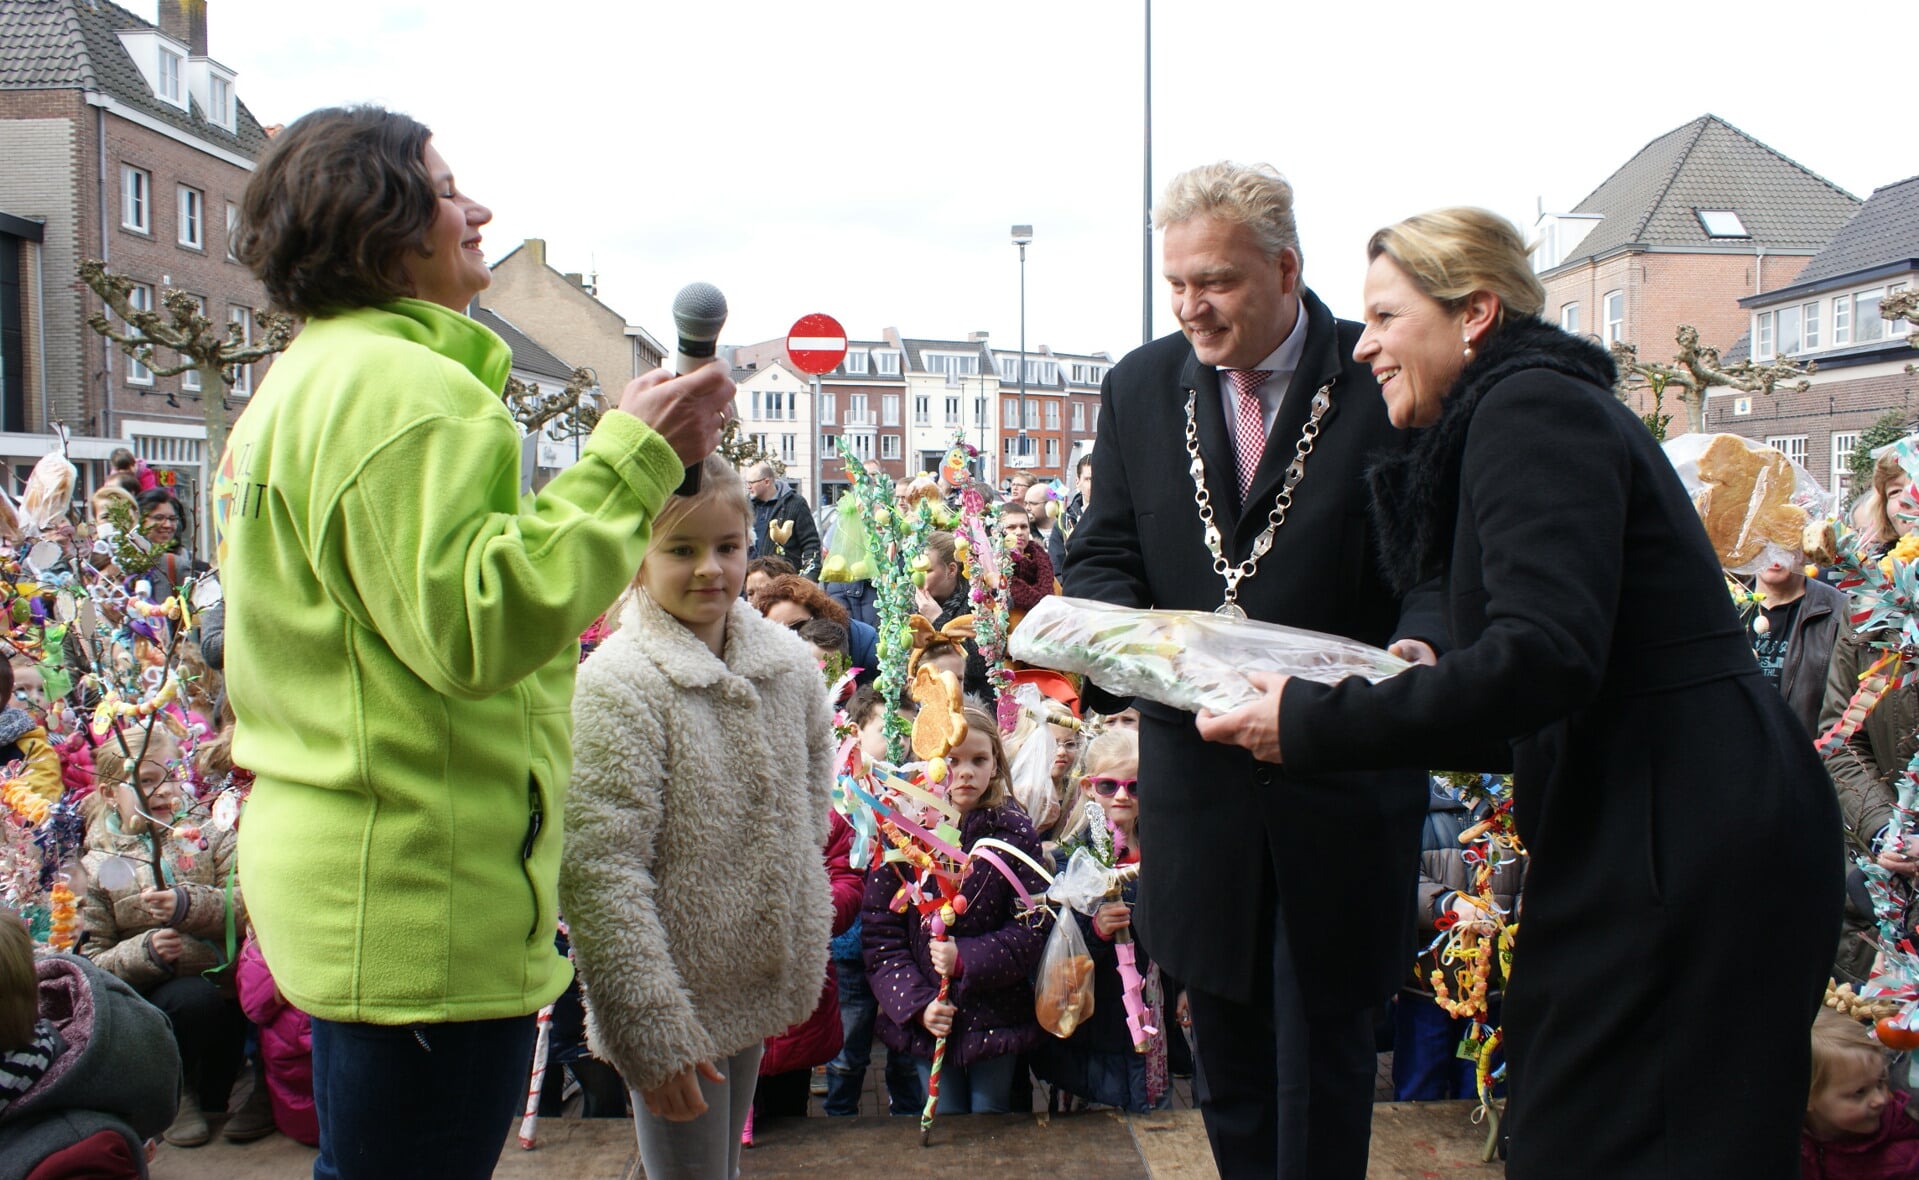 Burgemeester Mark Buijs en echtgenote Christel ontvangen een paasbrood tijdens de ontvangst van de deelnemers aan de Palmpaasoptocht in Boxtel. Links Marion de Koning van Boxtel Vooruit. (Foto: Marc Cleutjens).